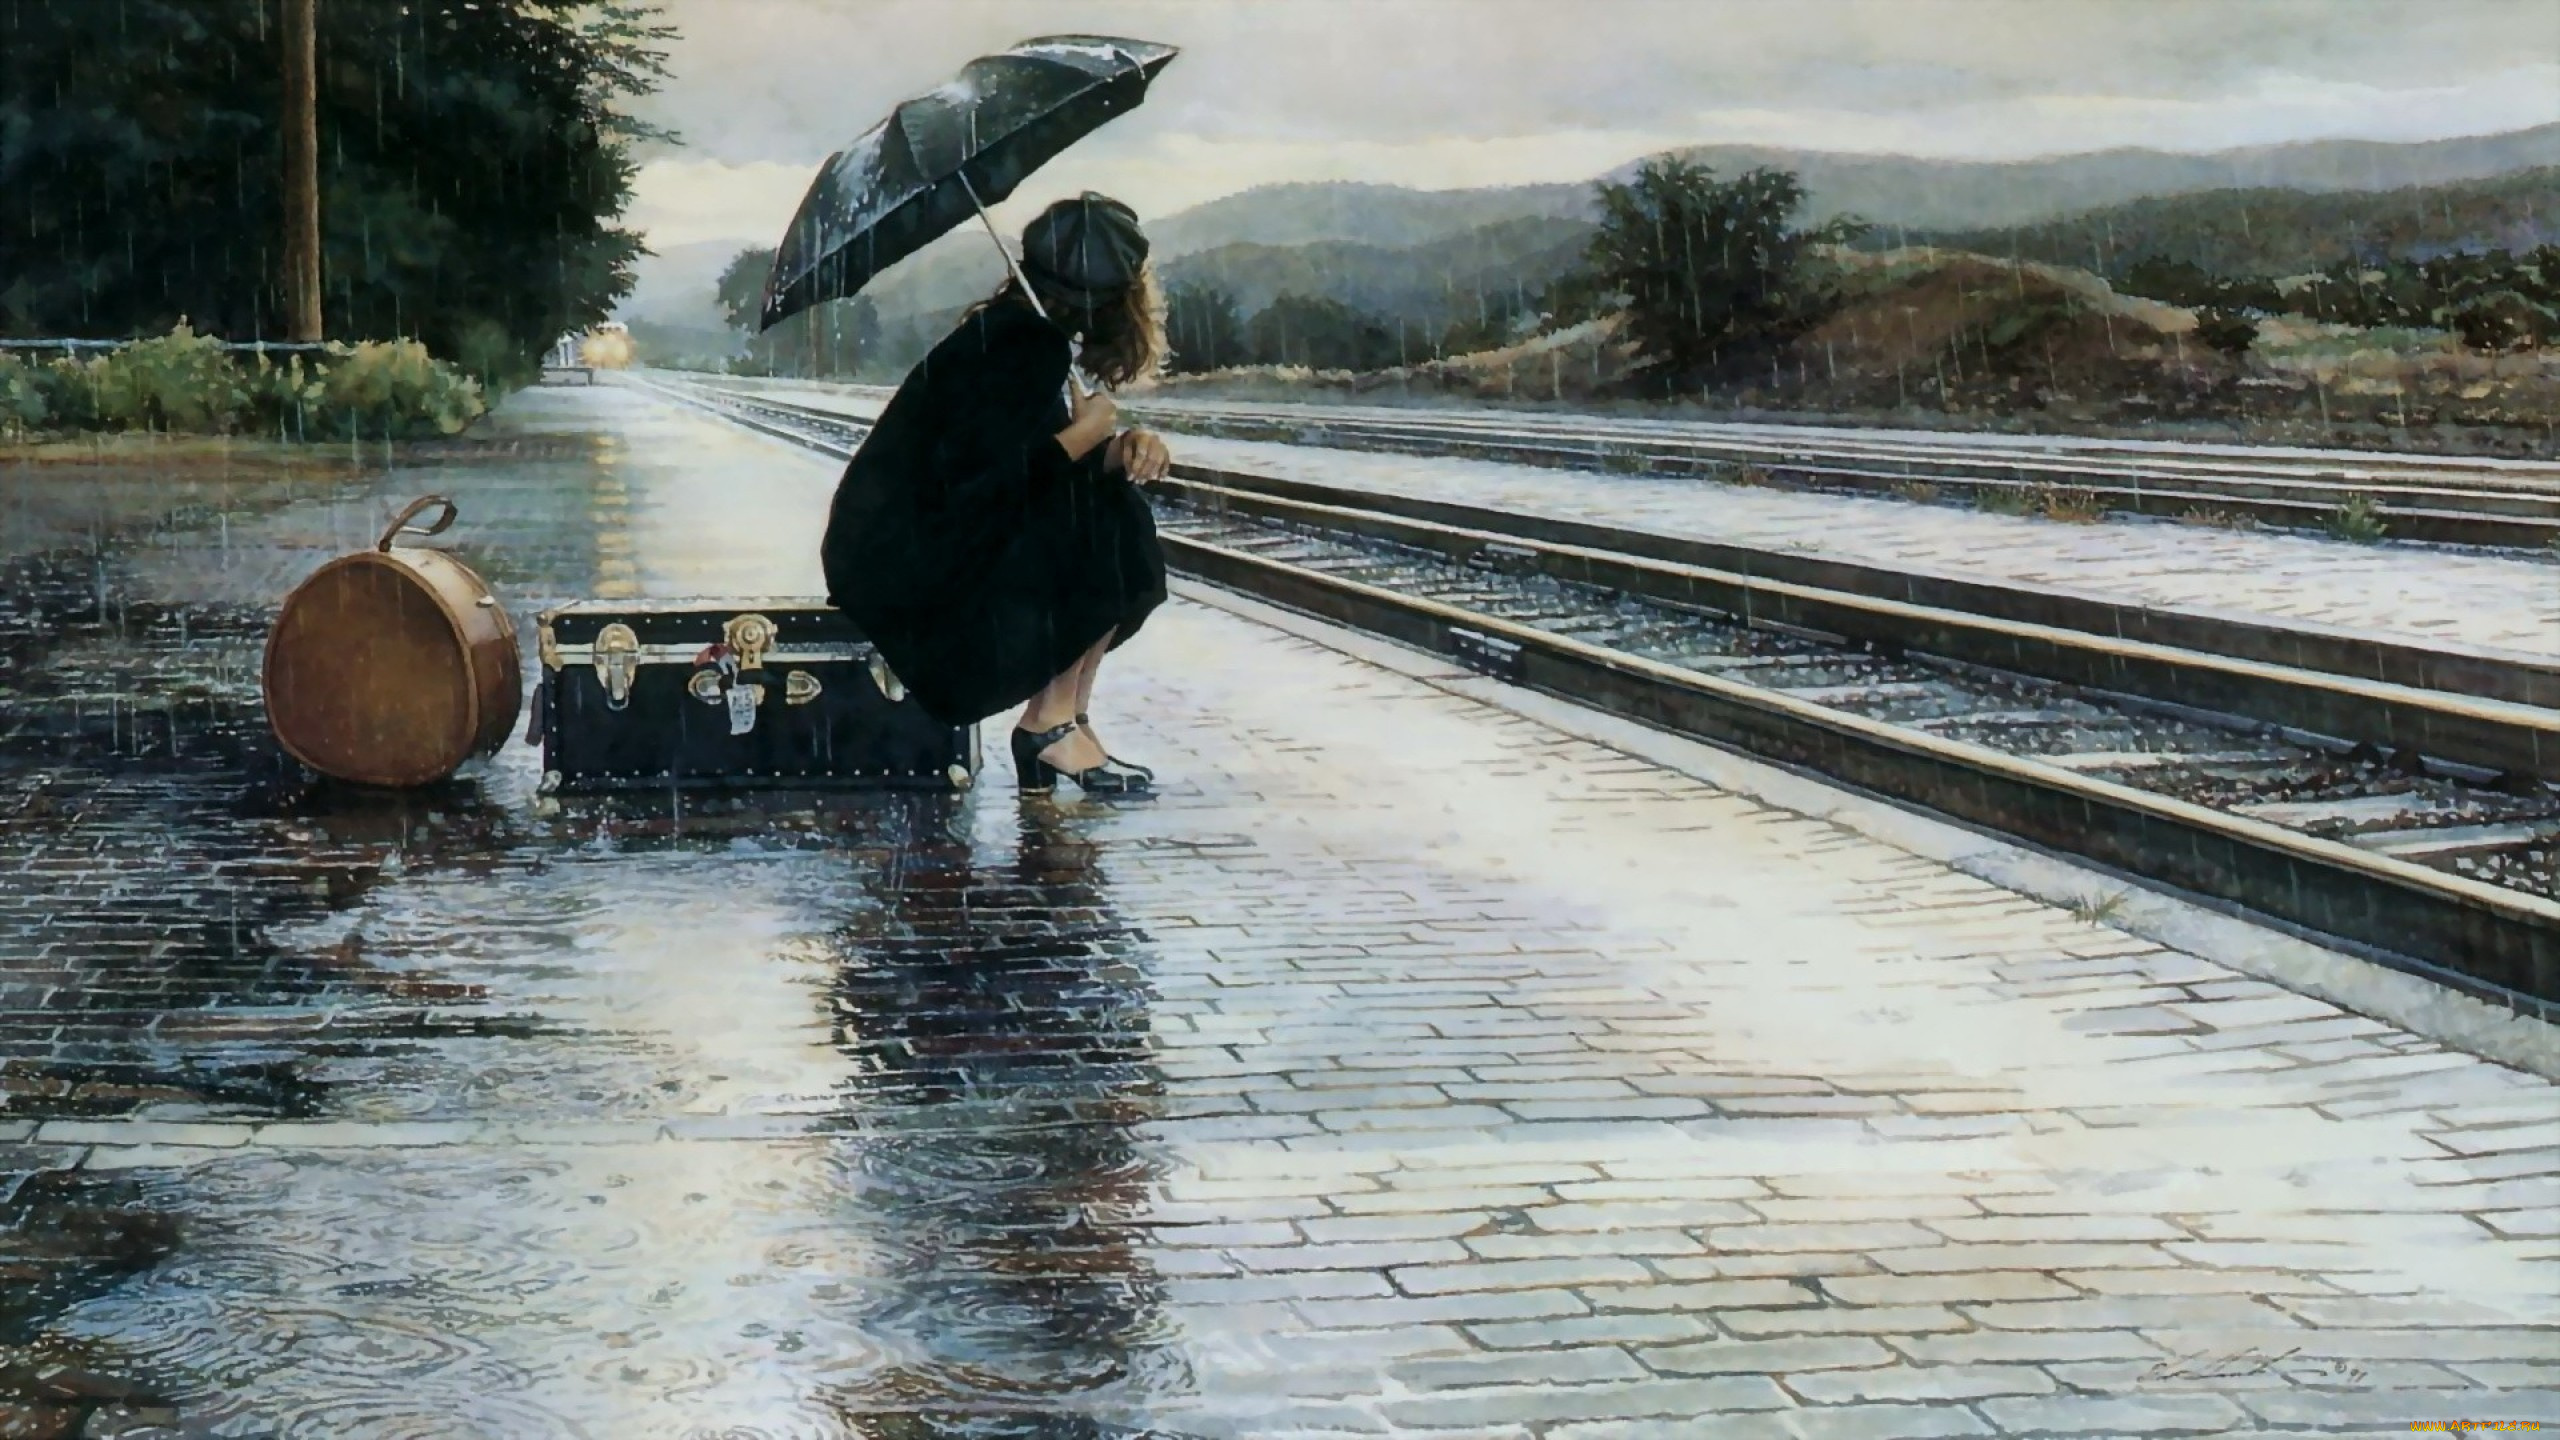 рисованное, люди, чемоданы, рельсы, девушка, вокзал, станция, зонт, платформа, лужи, дождь